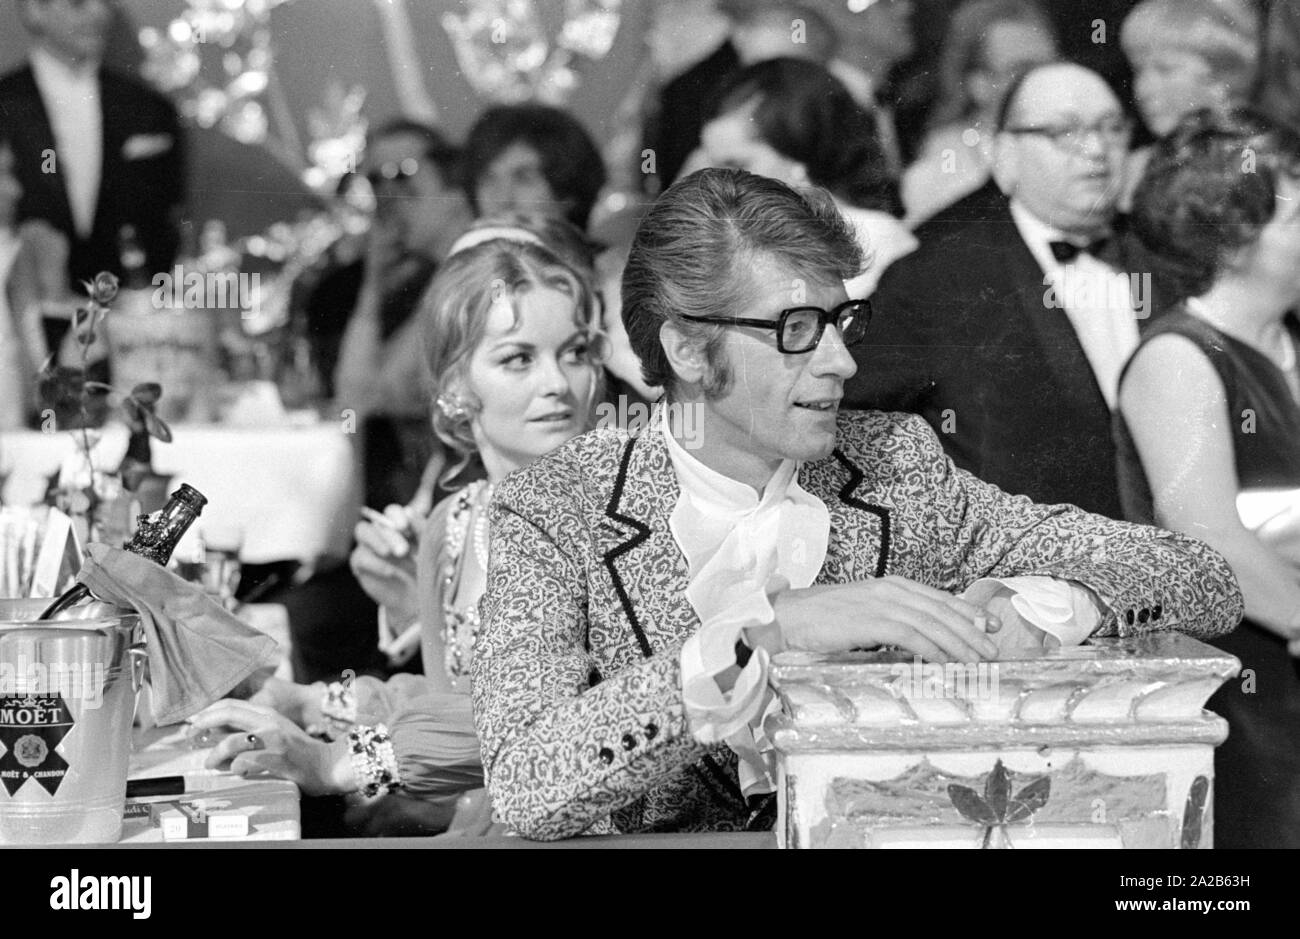 Rudi Carrell assis à une table remplie de champagne et verres sur le film Munich, balle dans le Bayerischer Hof. Carrell porte une veste à motifs et une chemise froissée, il s'appuie sur un pilier. Banque D'Images